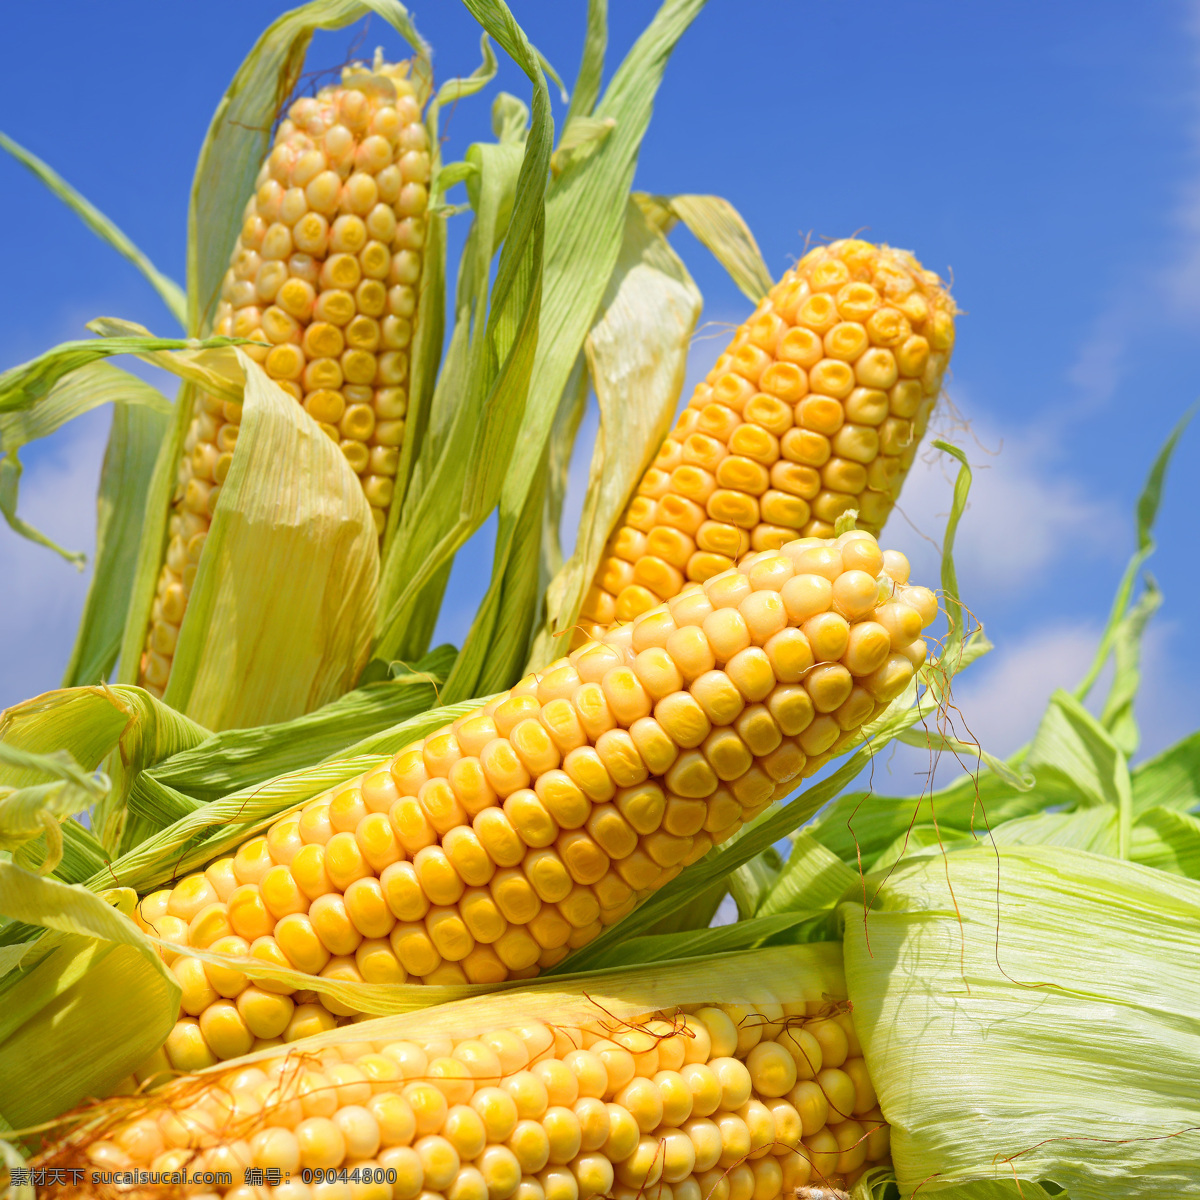 玉米 包谷 食物 食品 金黄色玉米 玉米棒 粮食 农产品 食材 食物原料 食材原料 餐饮美食